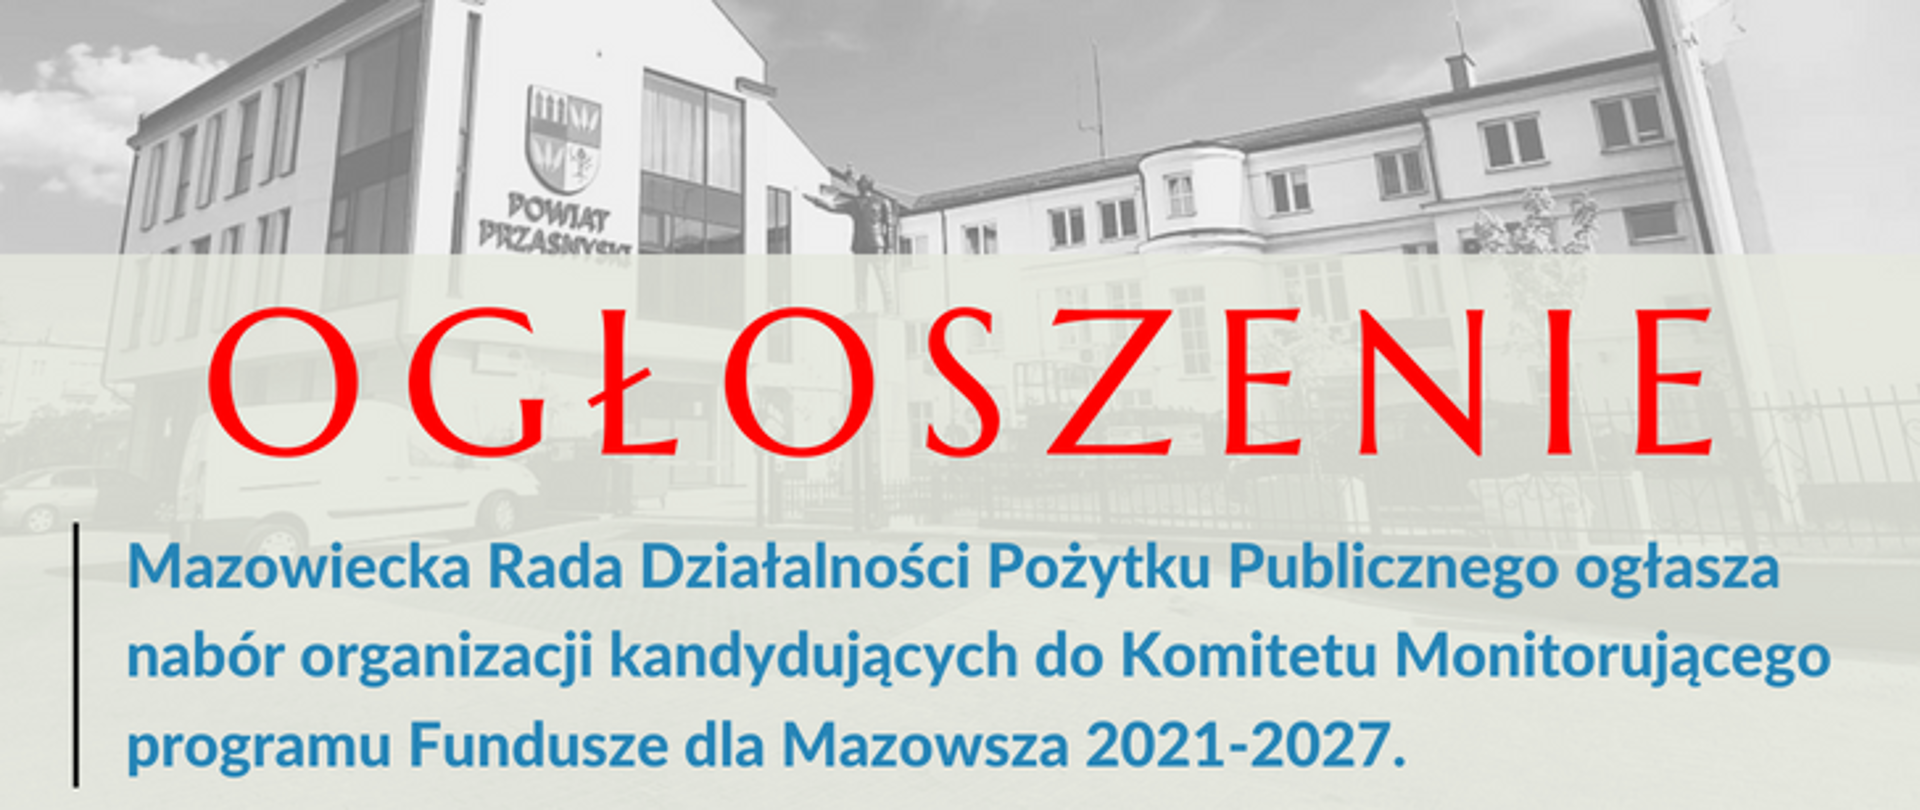 Grafika przedstawiająca ogłoszenie o treści: Mazowiecka Rada Działalności Pożytku Publicznego ogłasza nabór organizacji kandydujących do Komitetu Monitorującego programu Fundusze dla Mazowsza 2021-2027.